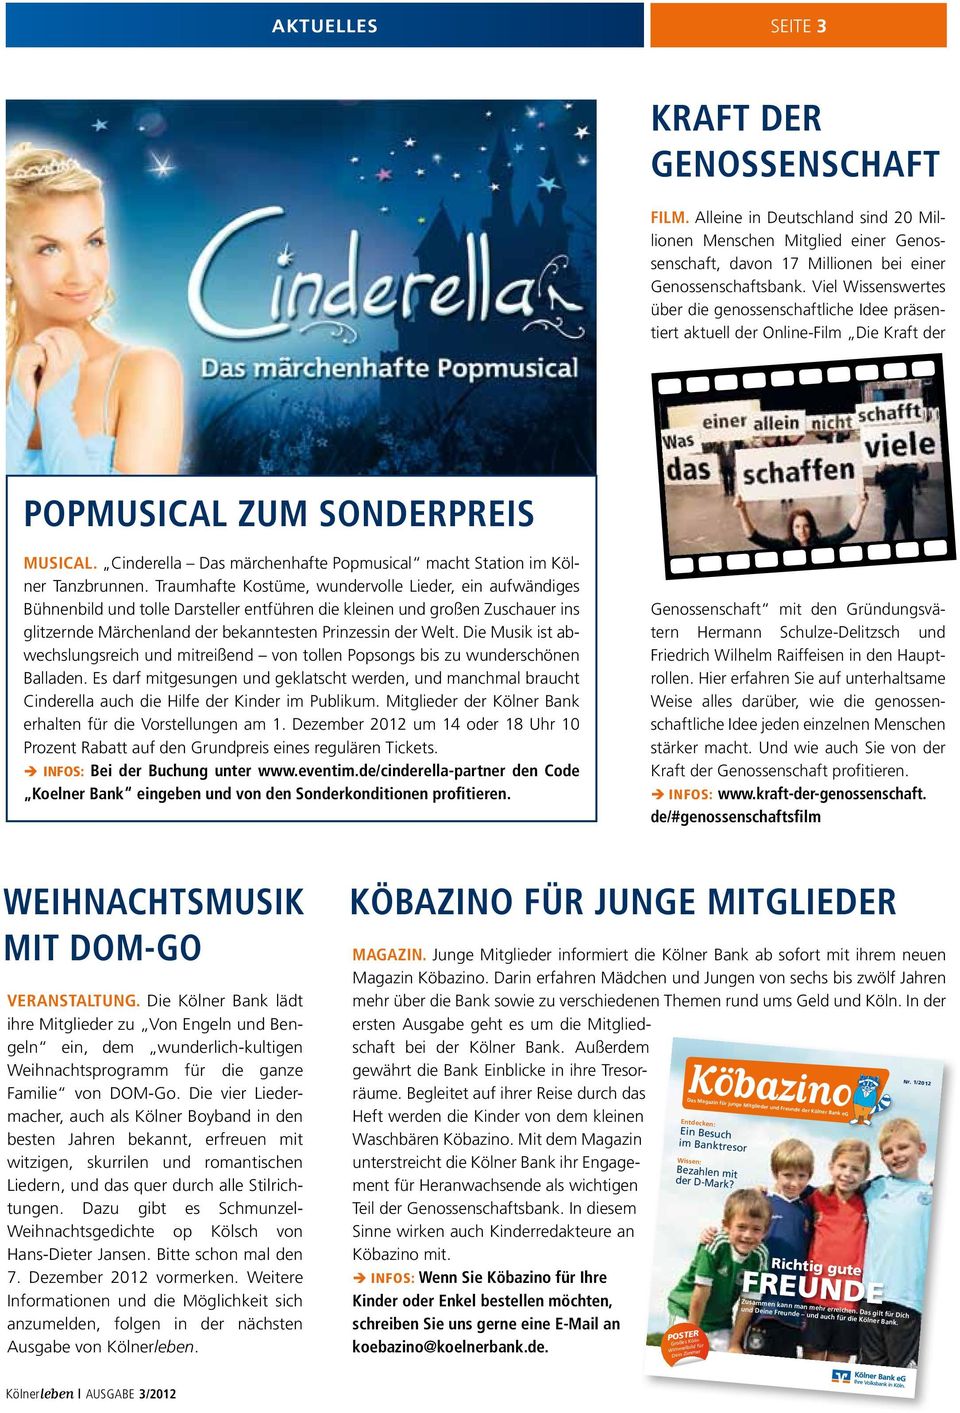 Cinderella Das märchenhafte Popmusical macht Station im Kölner Tanzbrunnen.